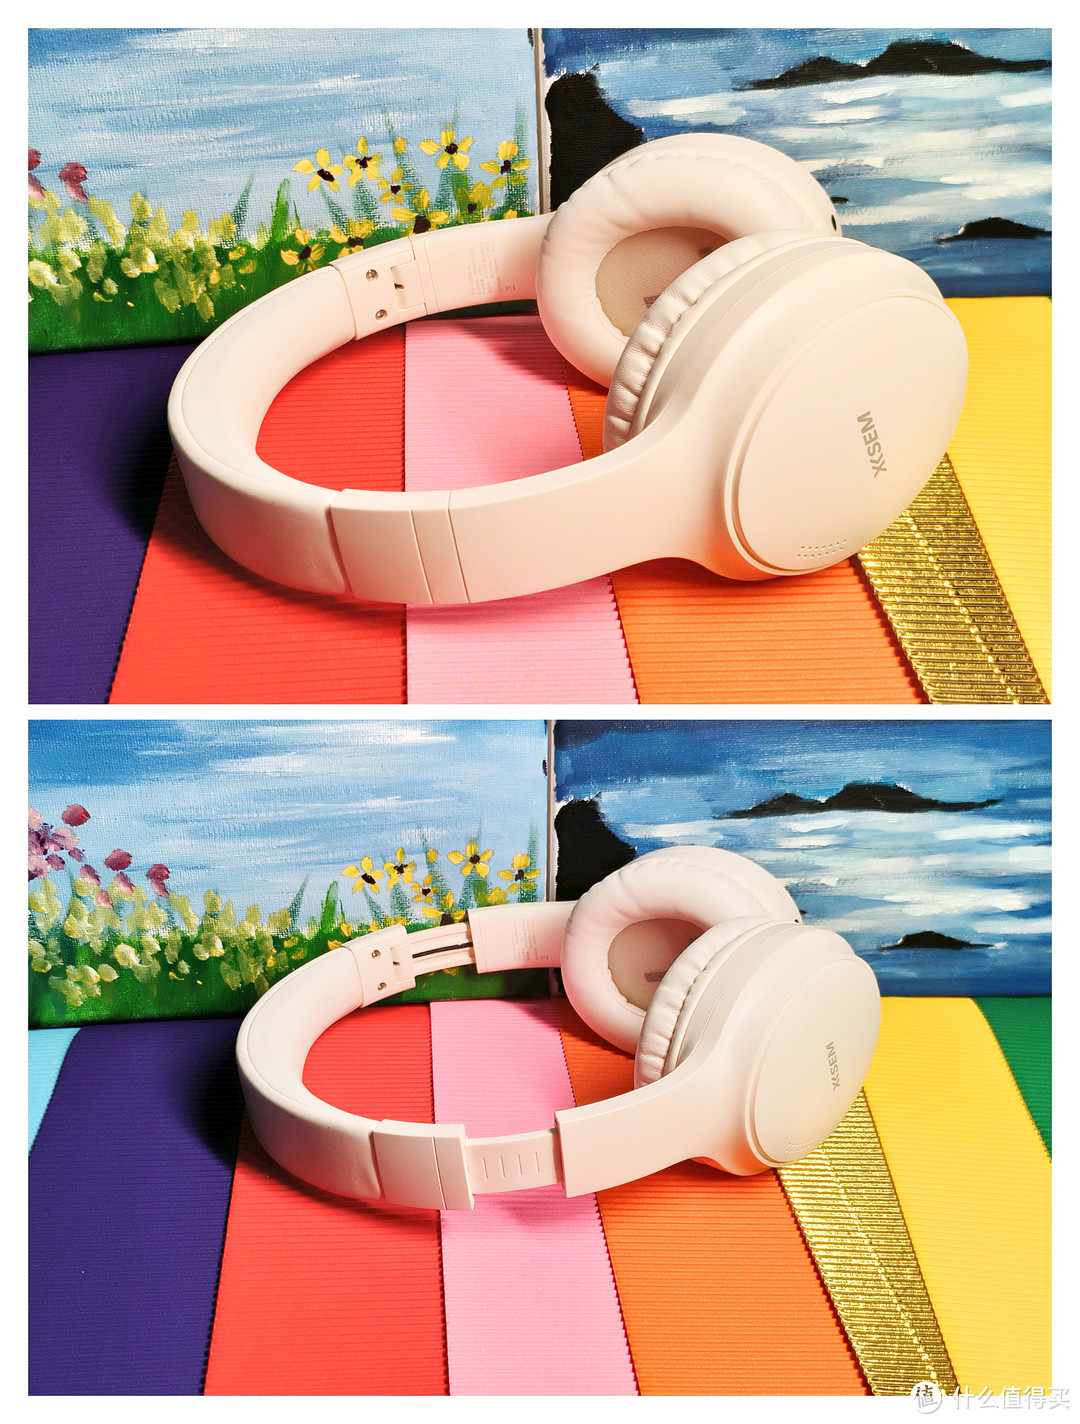 头戴式降噪蓝牙耳机 西圣XISEM H1 只需要百元你敢买吗？